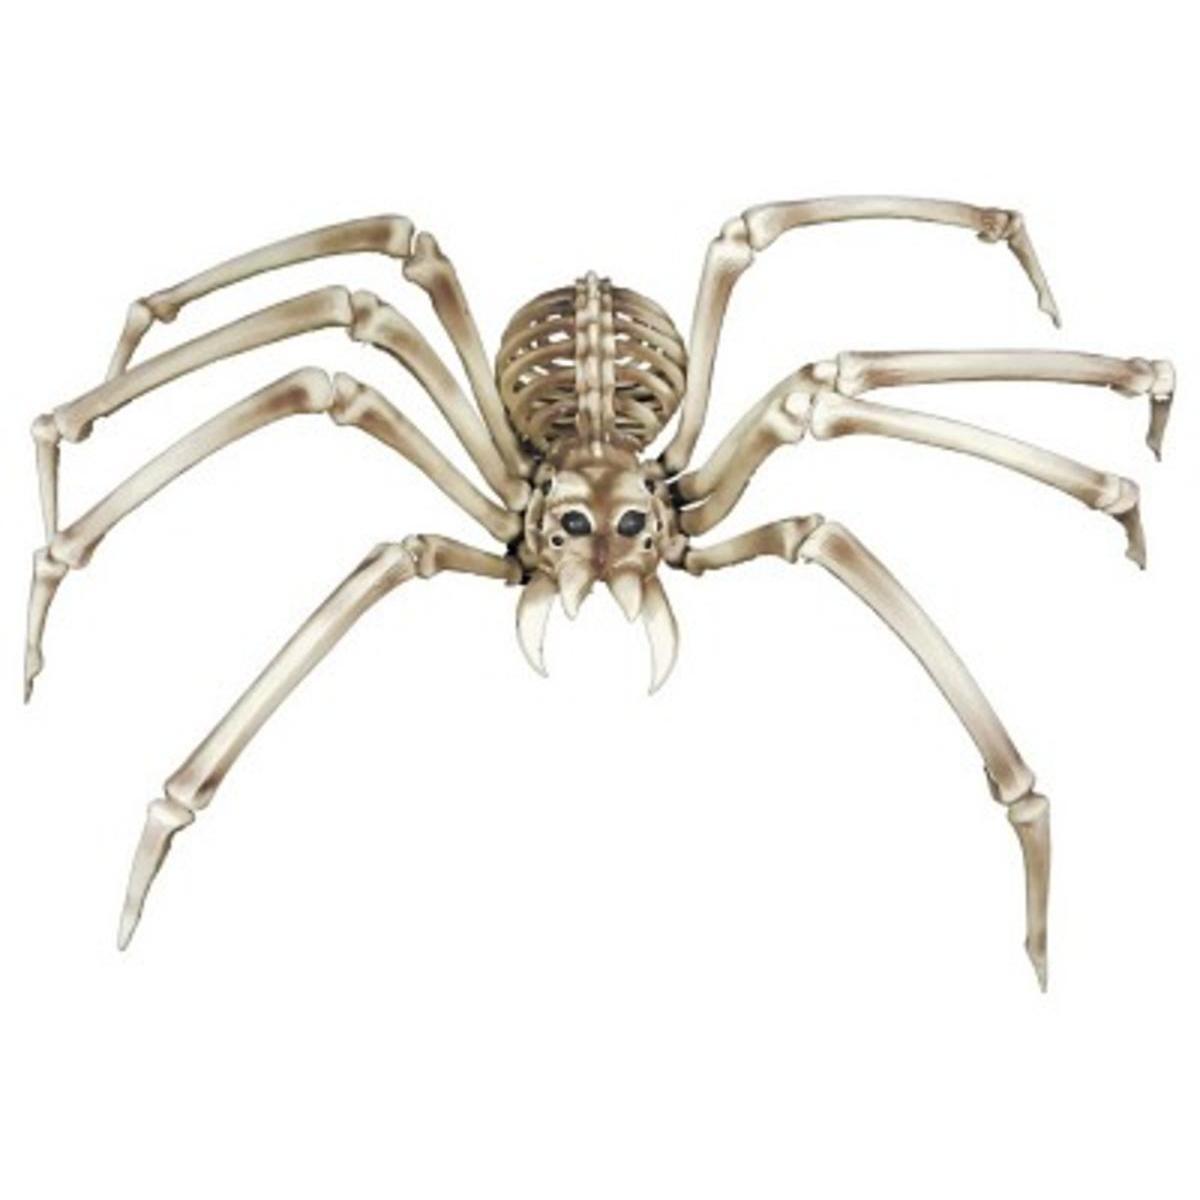 Squelette araignée géante - H 82 cm - C'PARTY